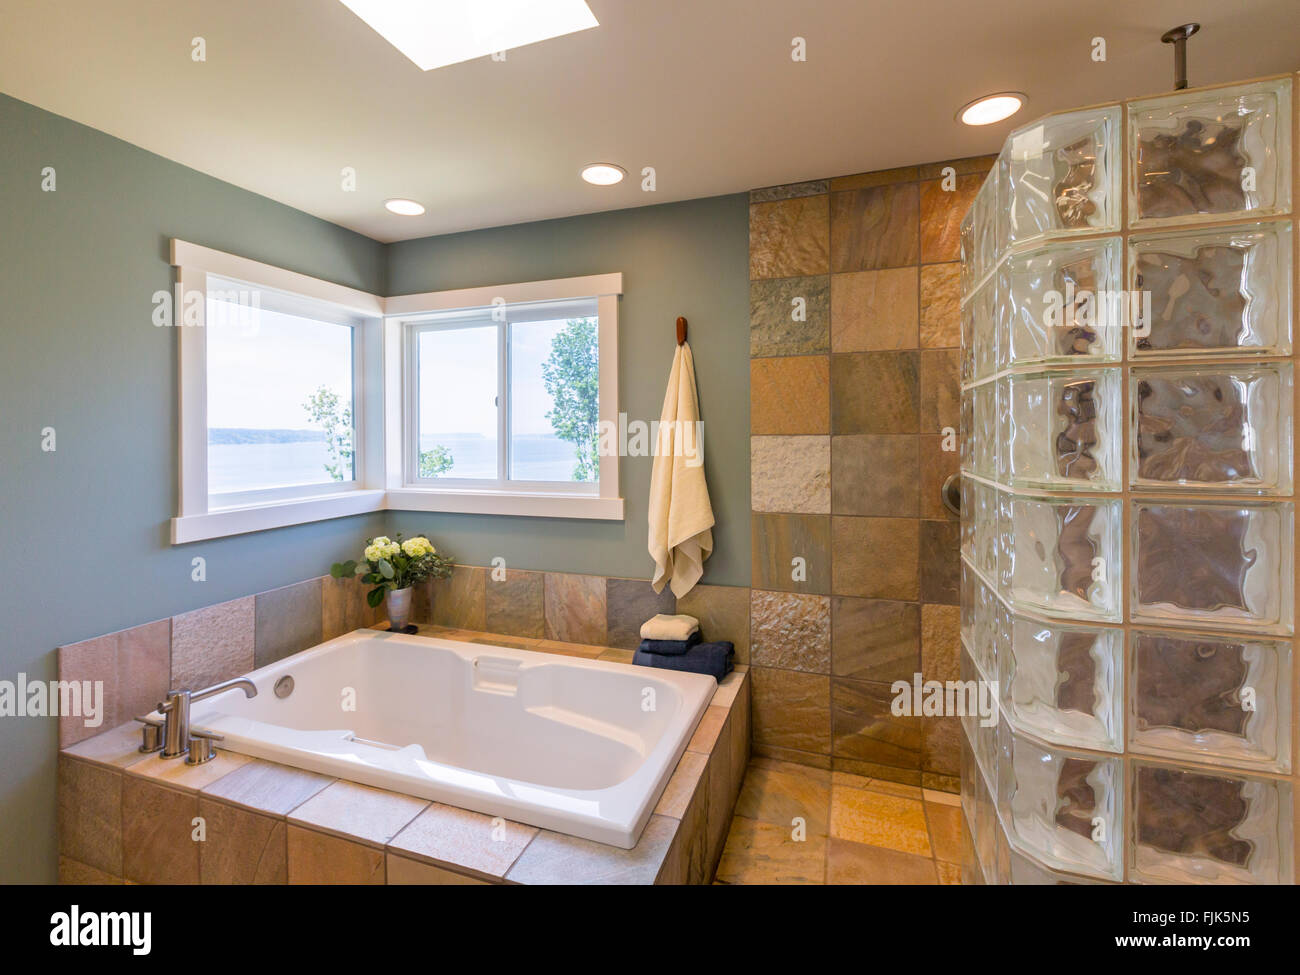 Haut de gamme contemporain Accueil Salle de bains spa intérieur avec des carreaux en verre de douche, murs recouverts de carreaux en ardoise, acrylique baignoire et vue windows Banque D'Images